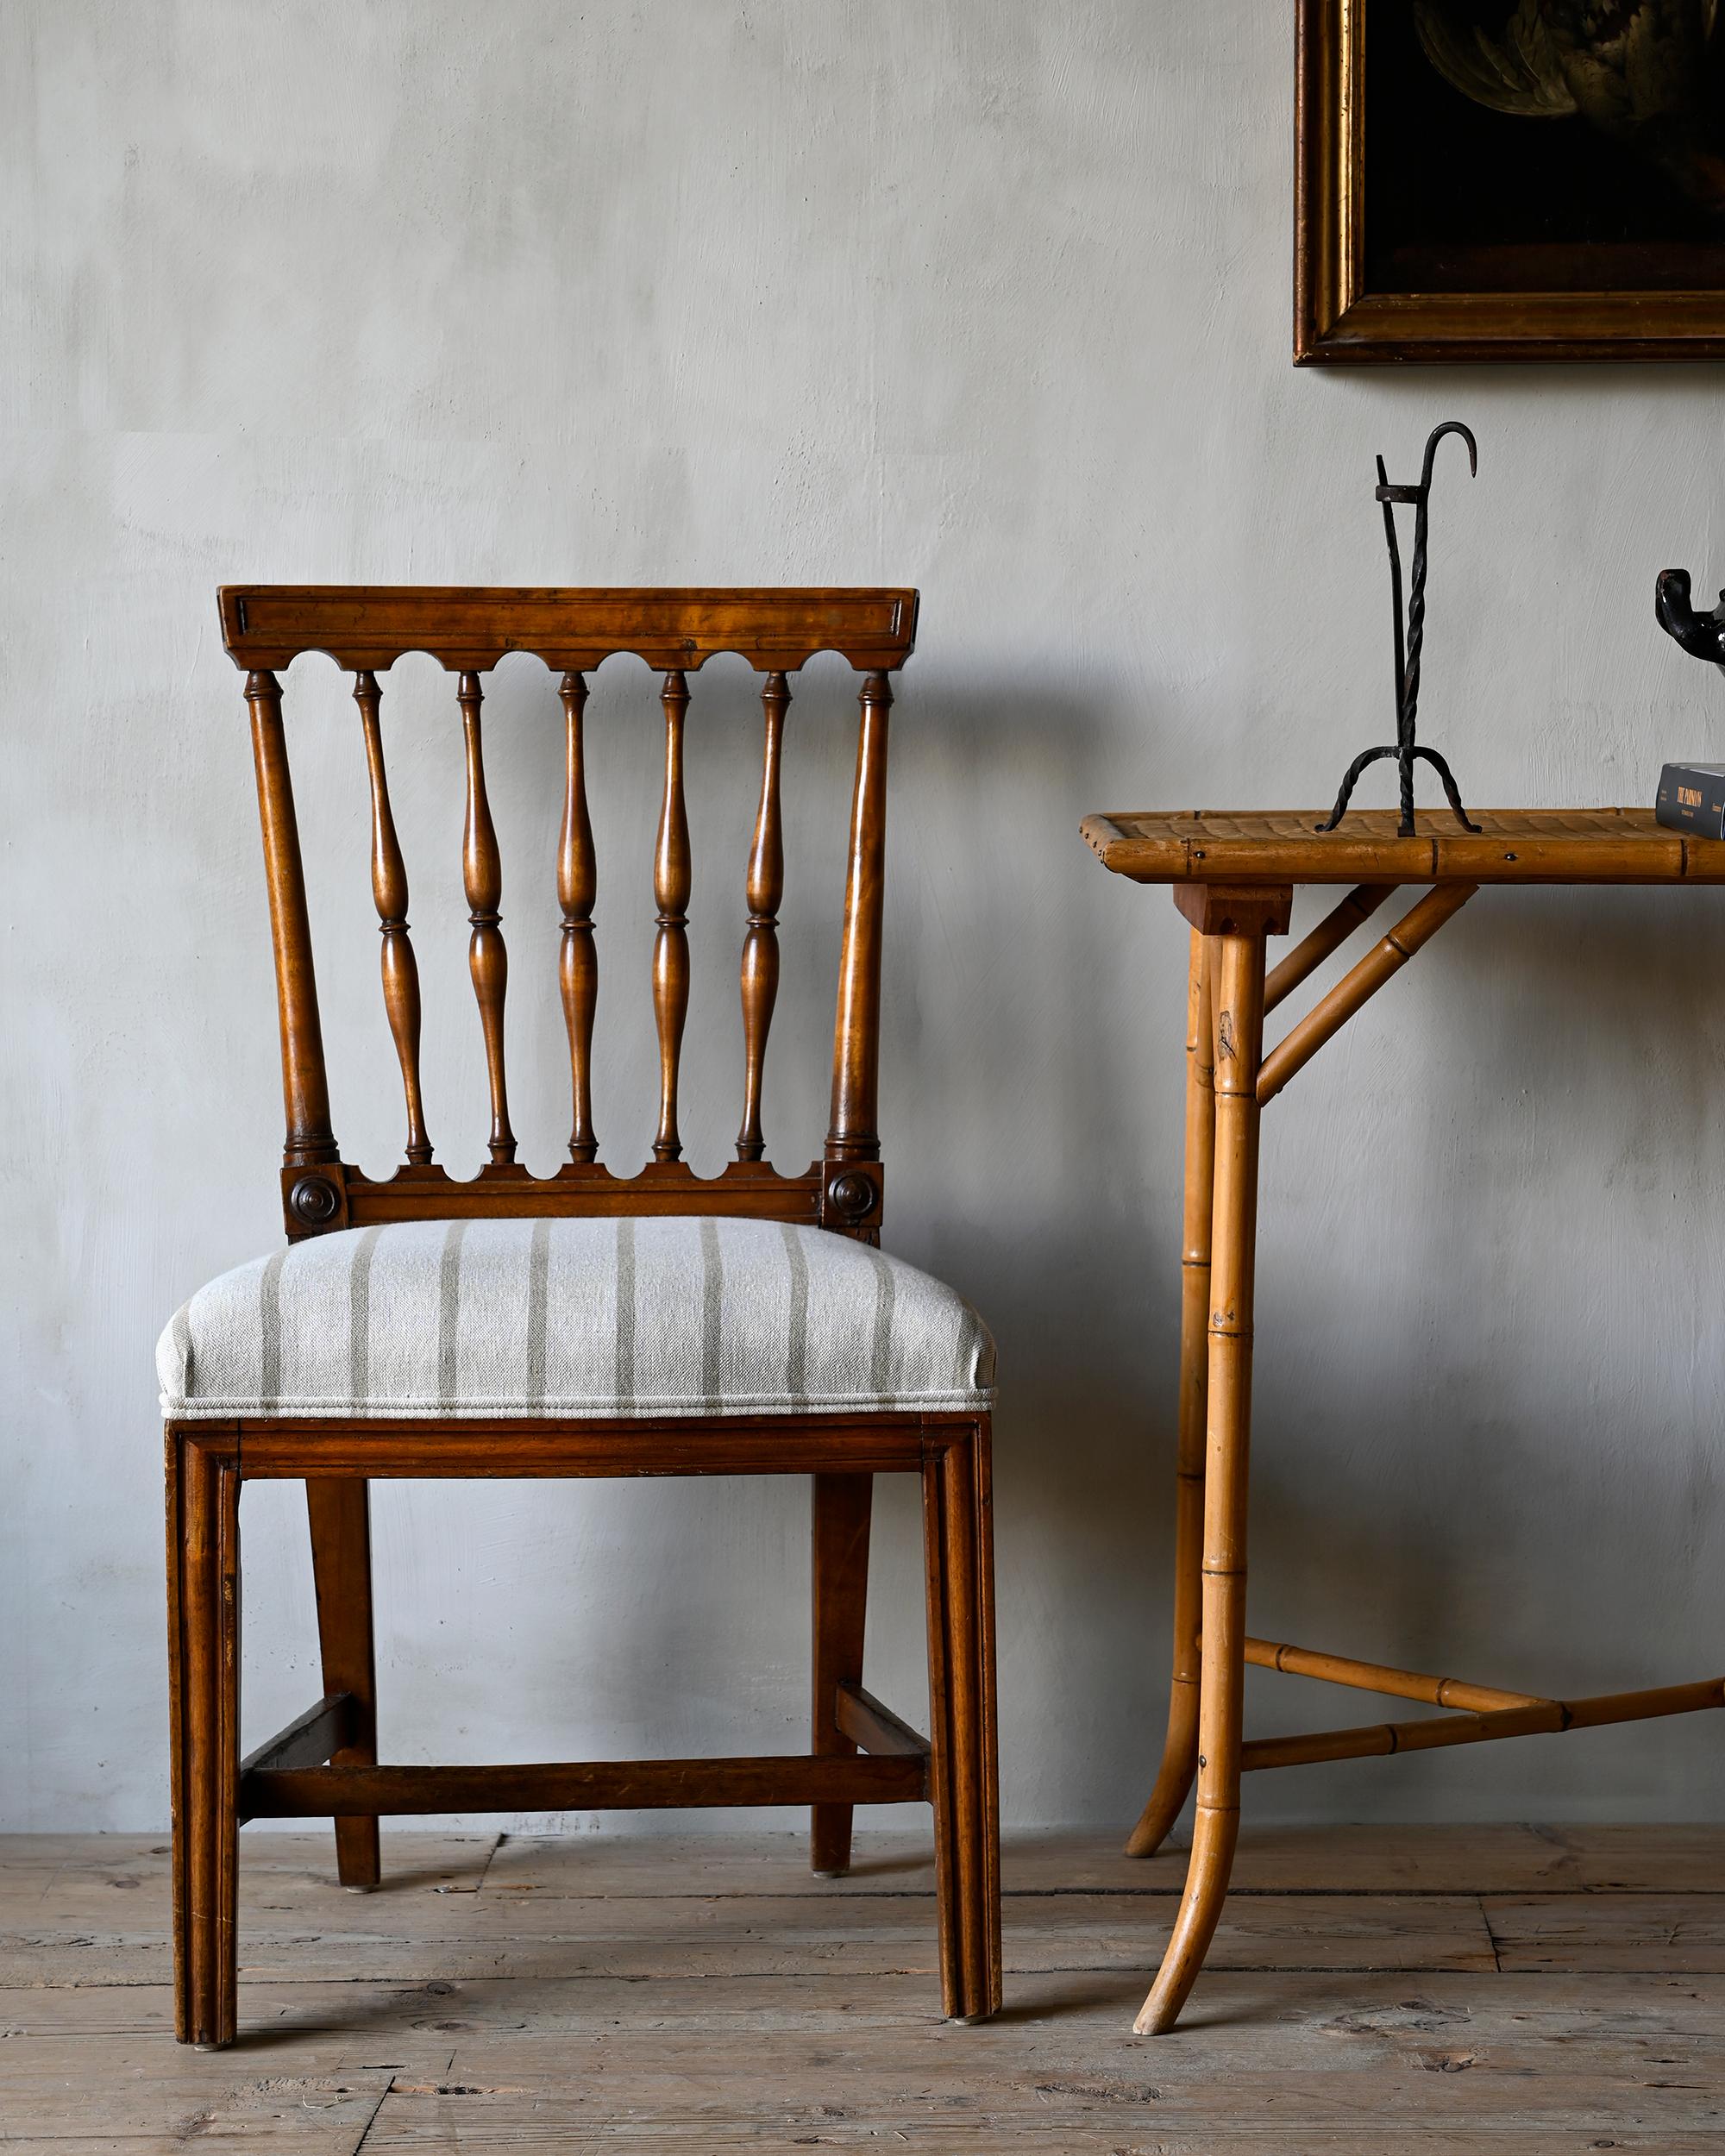 Rare et belle paire de chaises gustaviennes du début du XIXe siècle dans le goût chinois, signées par le maître chaisier Ephraim Sthal (1767-1820) Fournisseur de la Cour royale et l'un des fabricants les plus sophistiqués et inventifs de son époque.